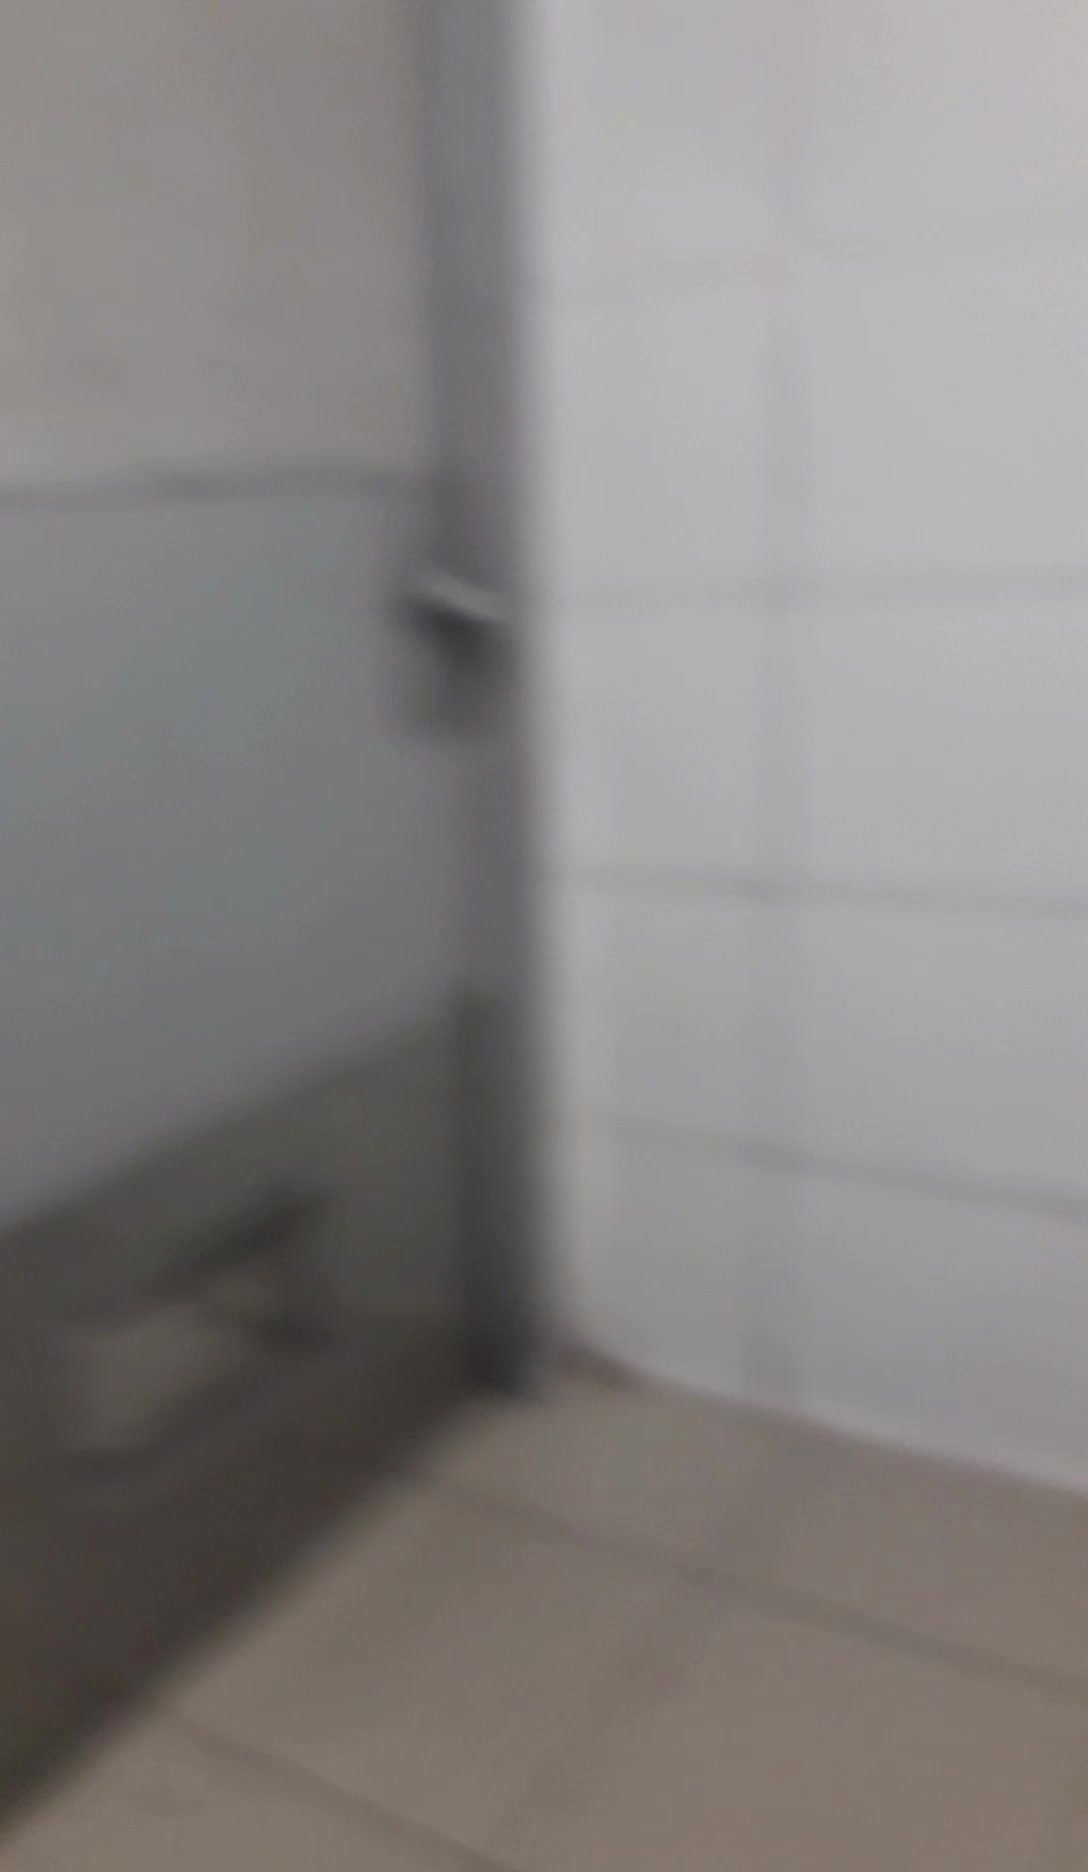 Strangers Opened The Public Toilet Door - video 24